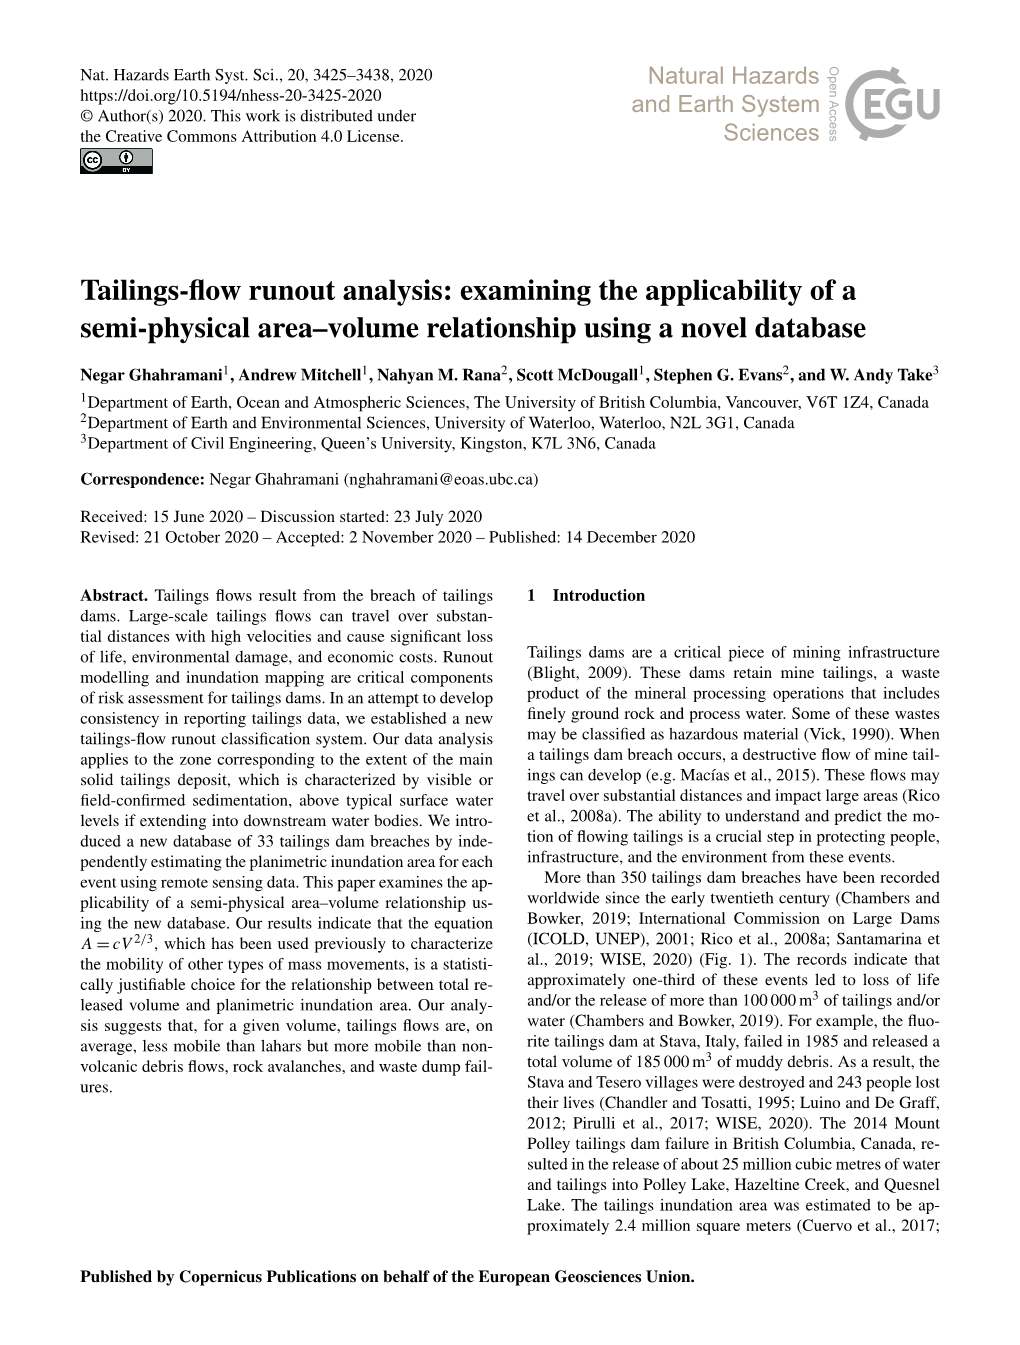 Tailings-Flow Runout Analysis